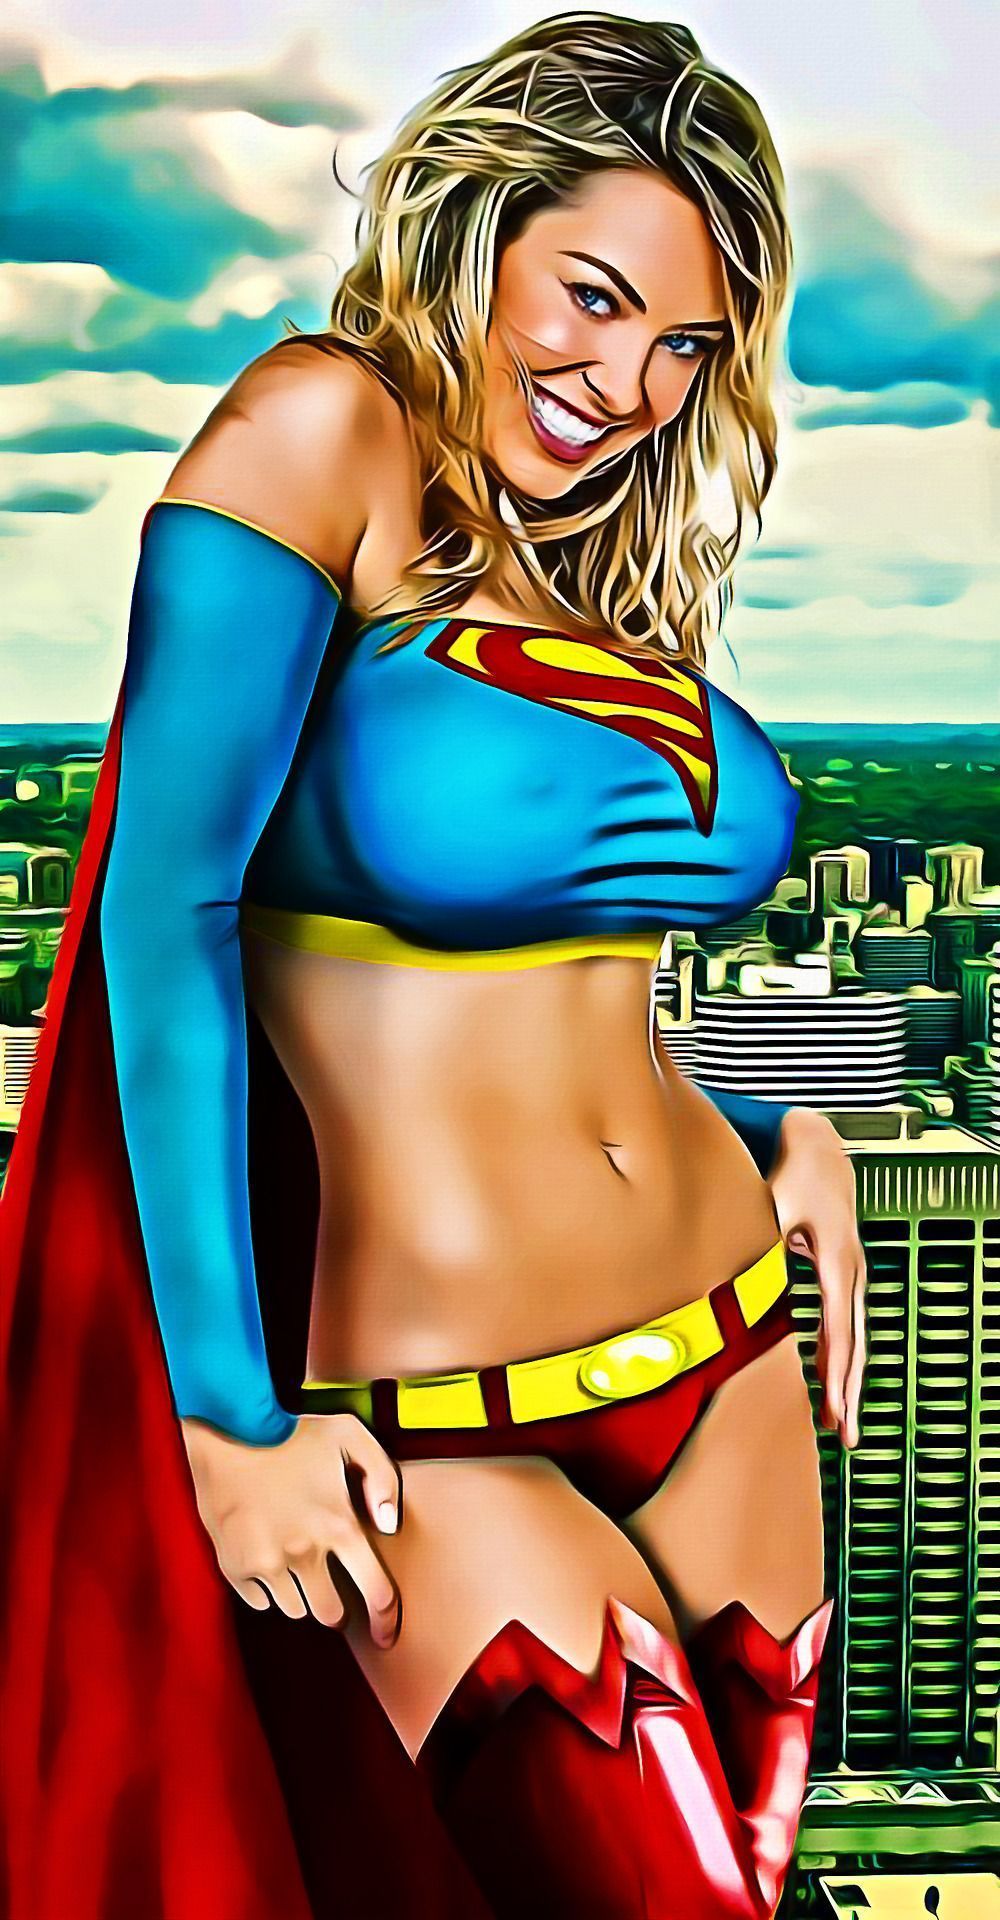 Supergirl erotica images . Top Porn Photos.